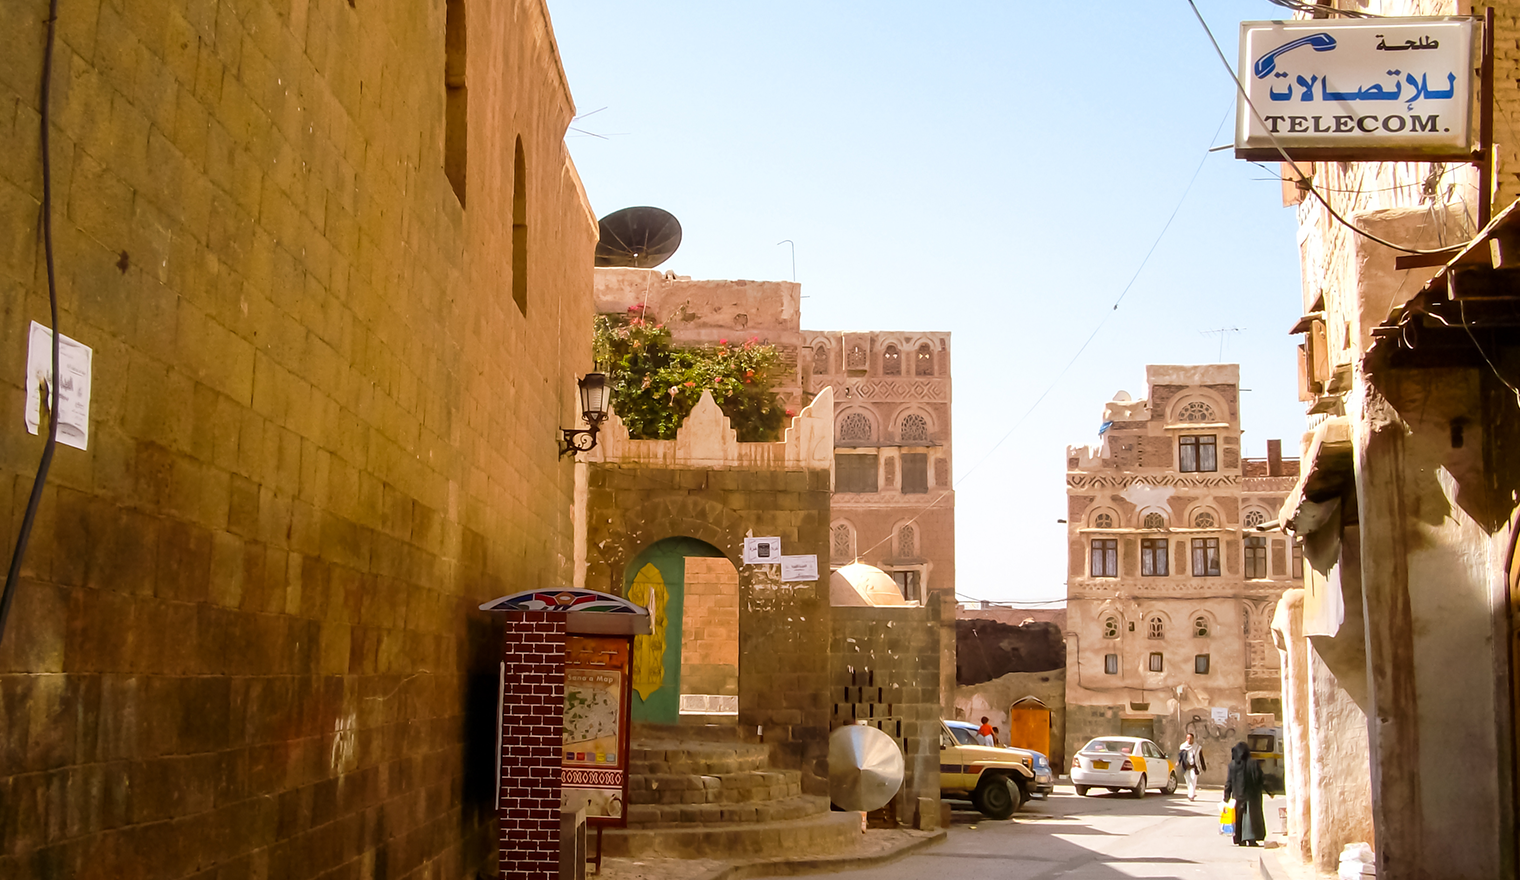 Alley in Sanaa, Yemen